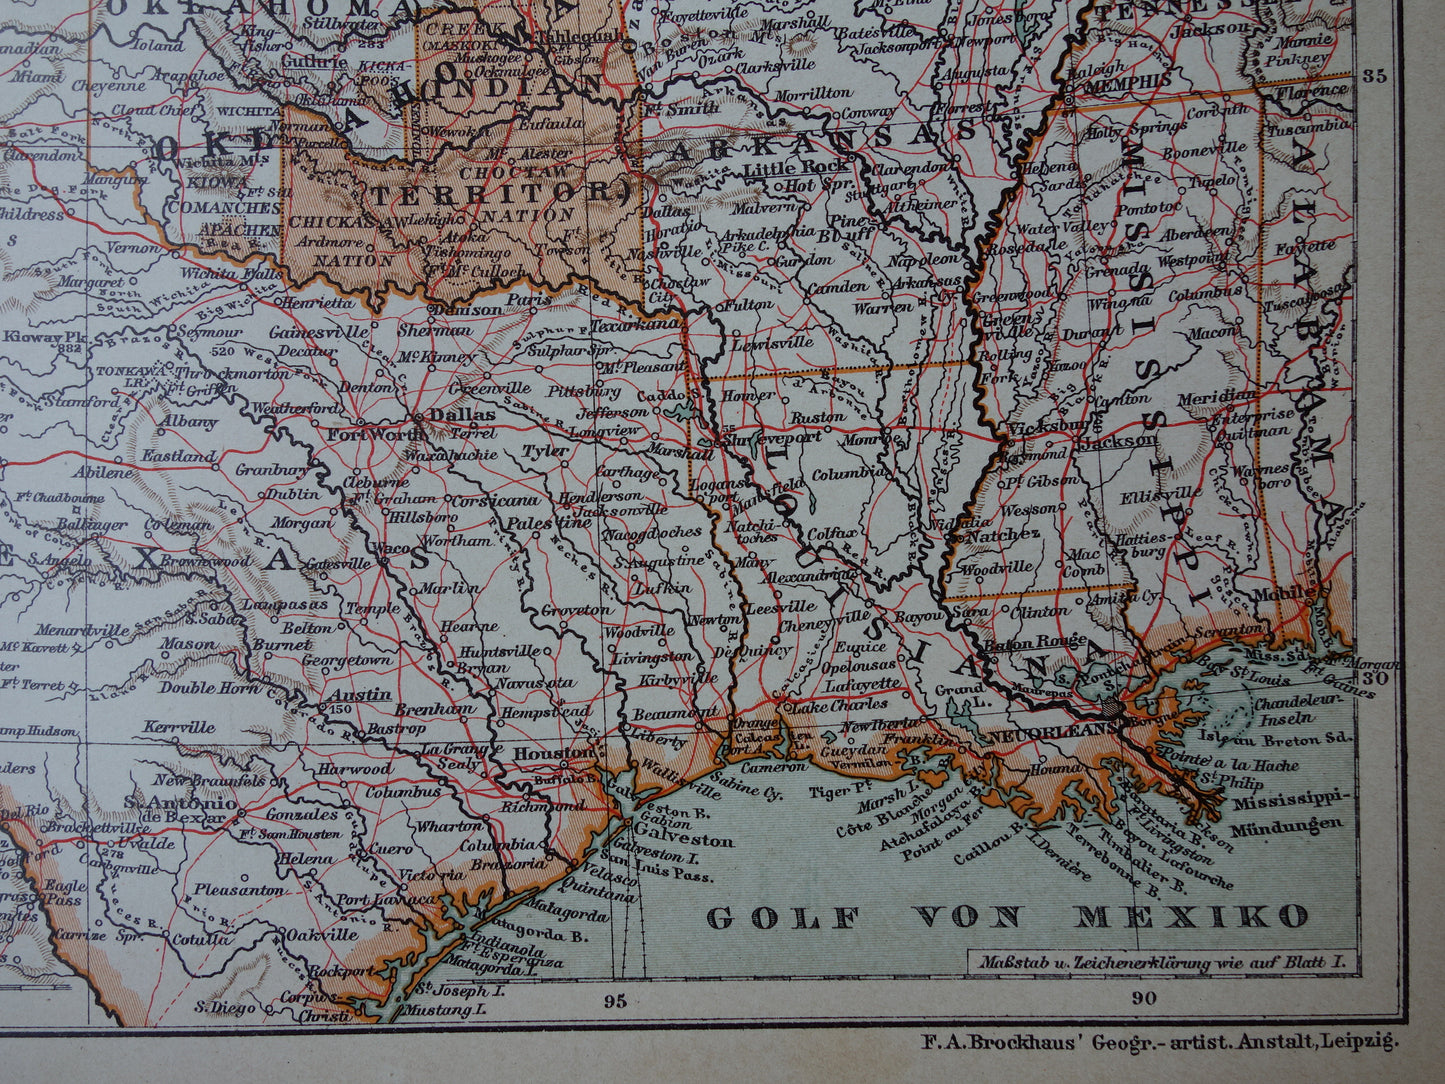 Verenigde Staten antieke kaart uit 1905 van midden VS - originele oude print van Amerika gedetailleerde vintage kaarten Texas Iowa